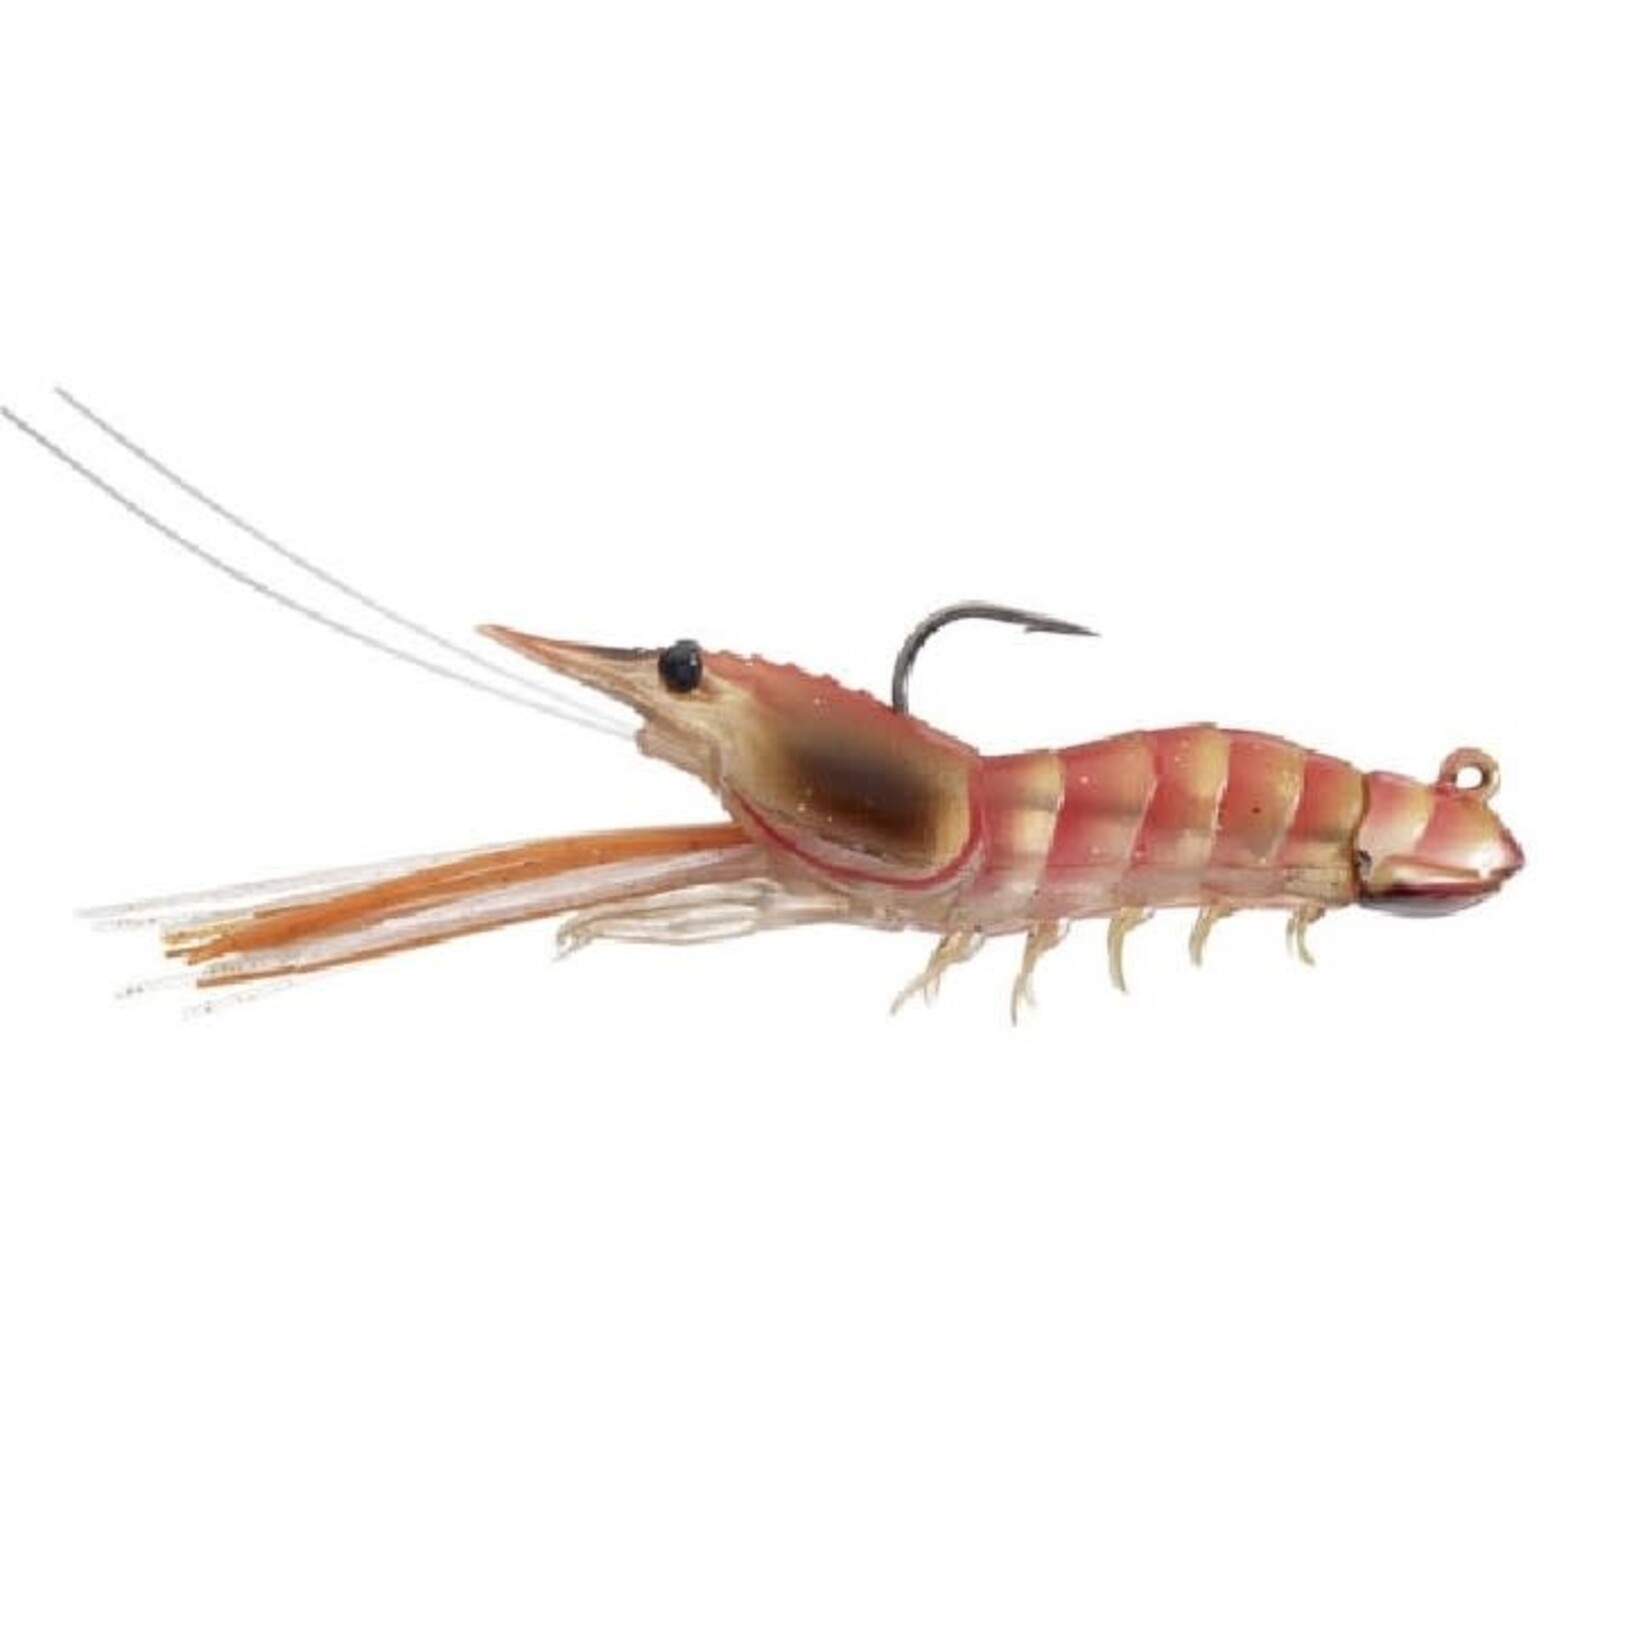 https://cdn.shoplightspeed.com/shops/667292/files/53653325/1652x1652x2/live-target-jigs-live-target-fleeing-shrimp-3-1-2.jpg